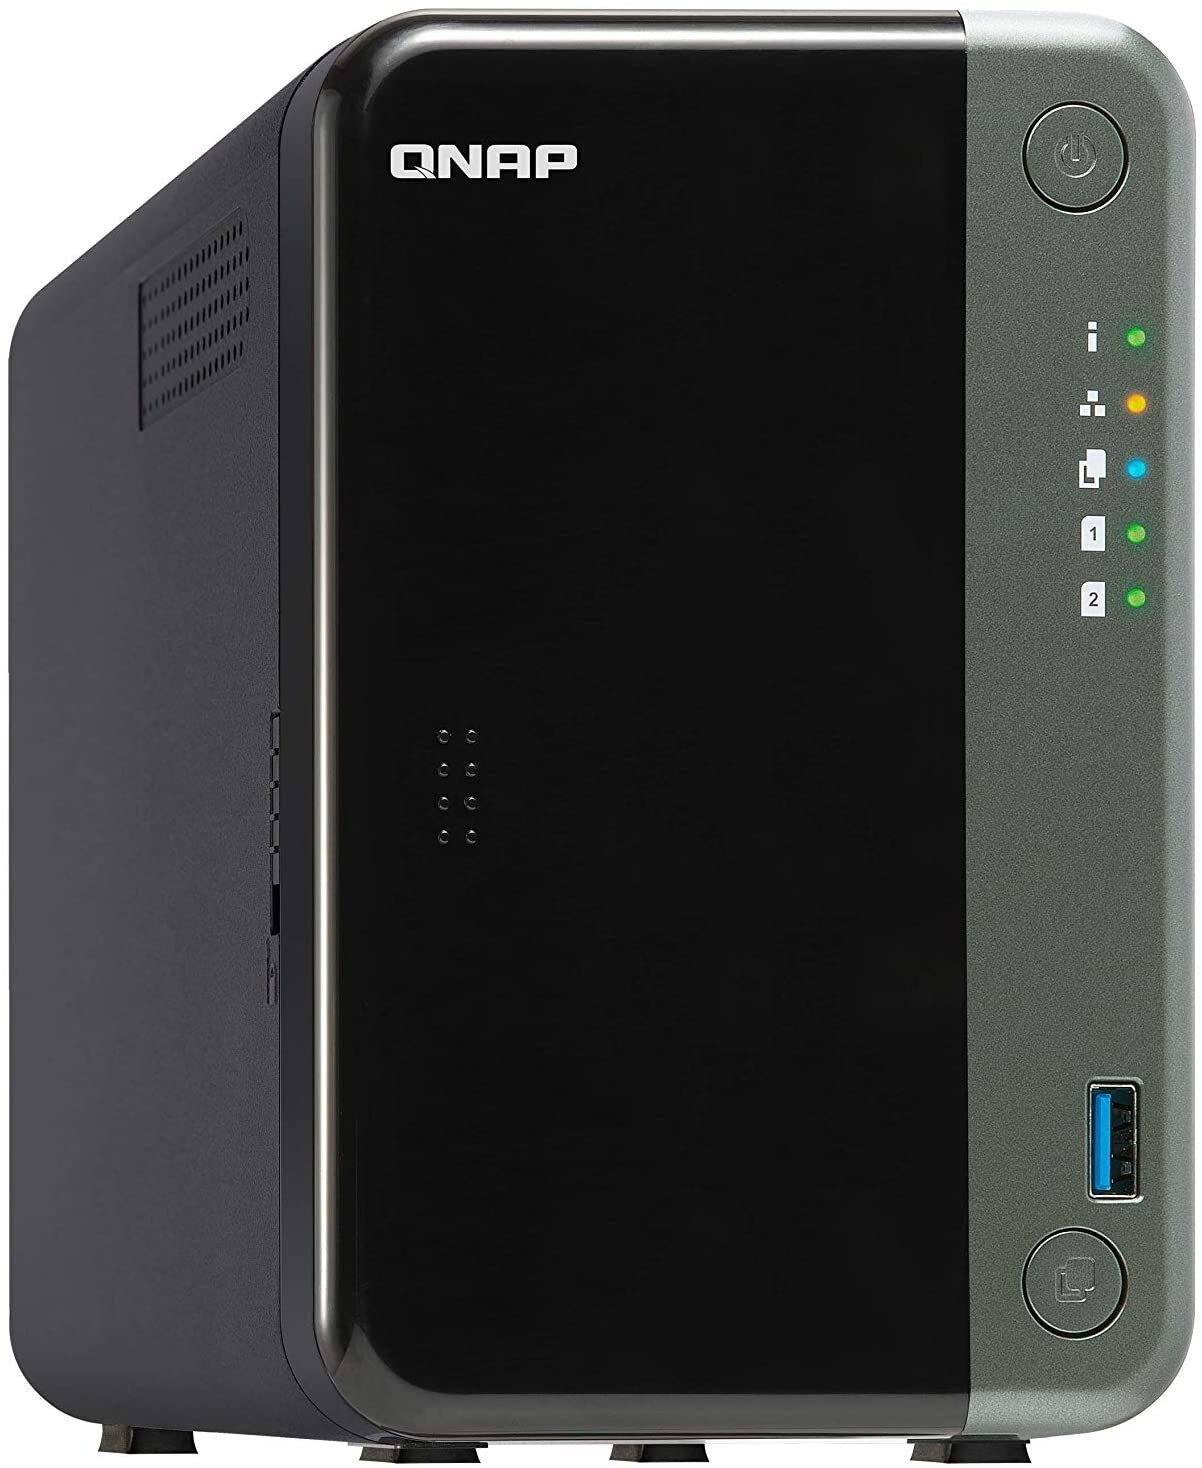 QNAP TS-253D